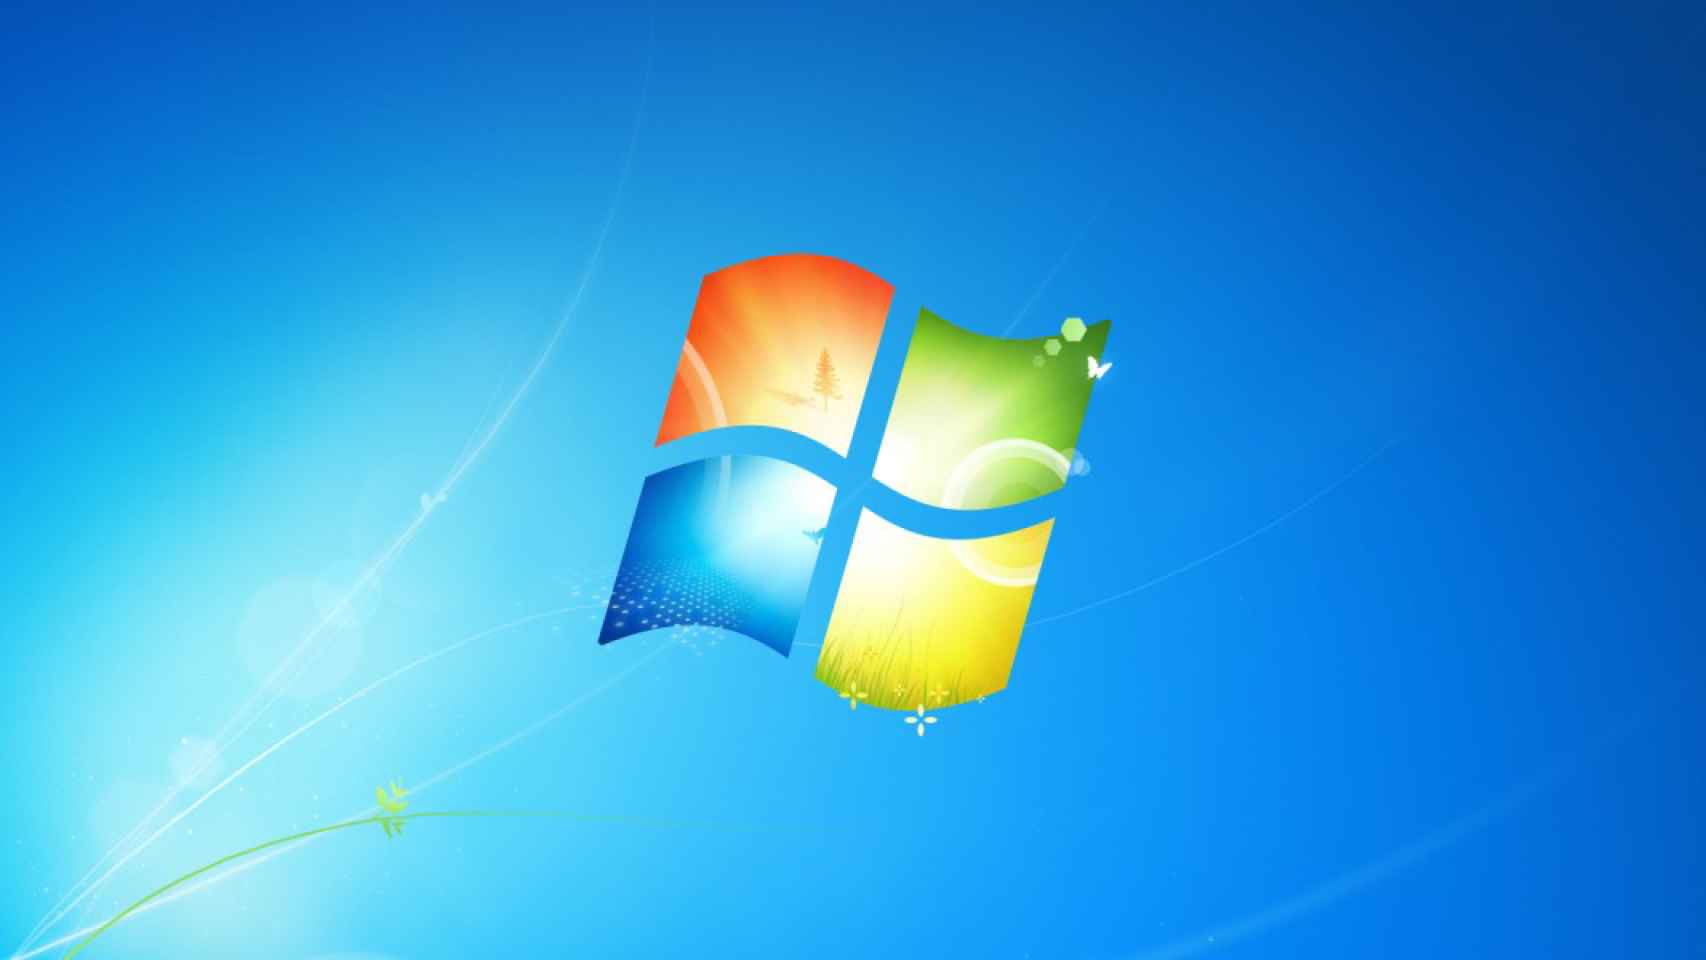 Windows 7 sigue siendo popular para su edad